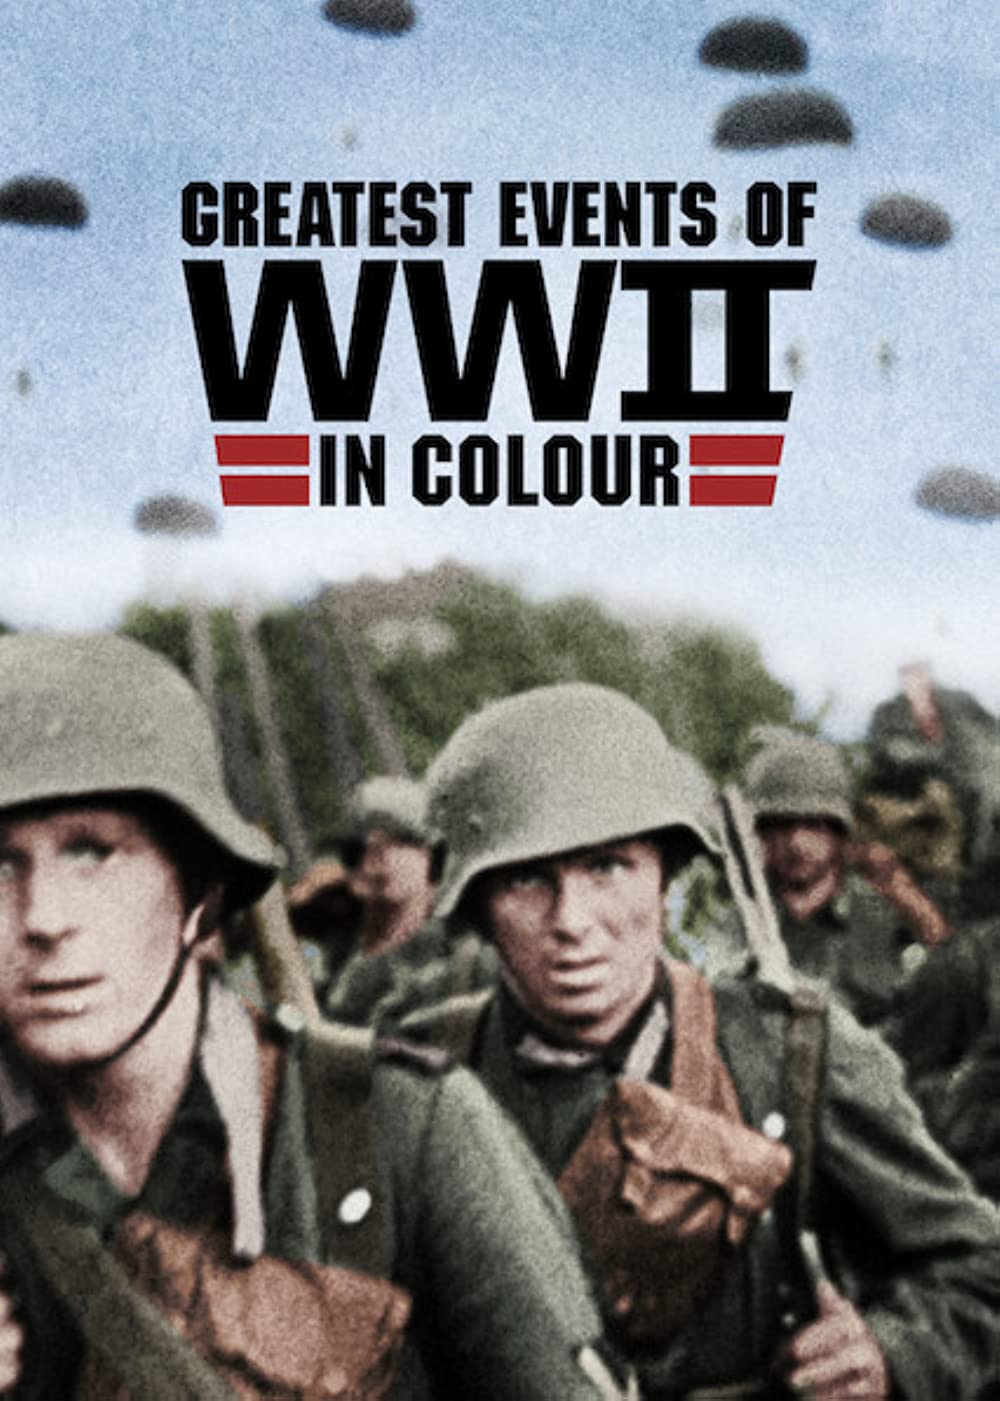 ดูหนังออนไลน์ฟรี Greatest Events of WWII in Colour (2019) EP.10 ภาพสีประวัติศาสตร์ของเหตุการณ์สำคัญช่วงสงครามโลกครั้งที่ 2 ตอนที่ 10